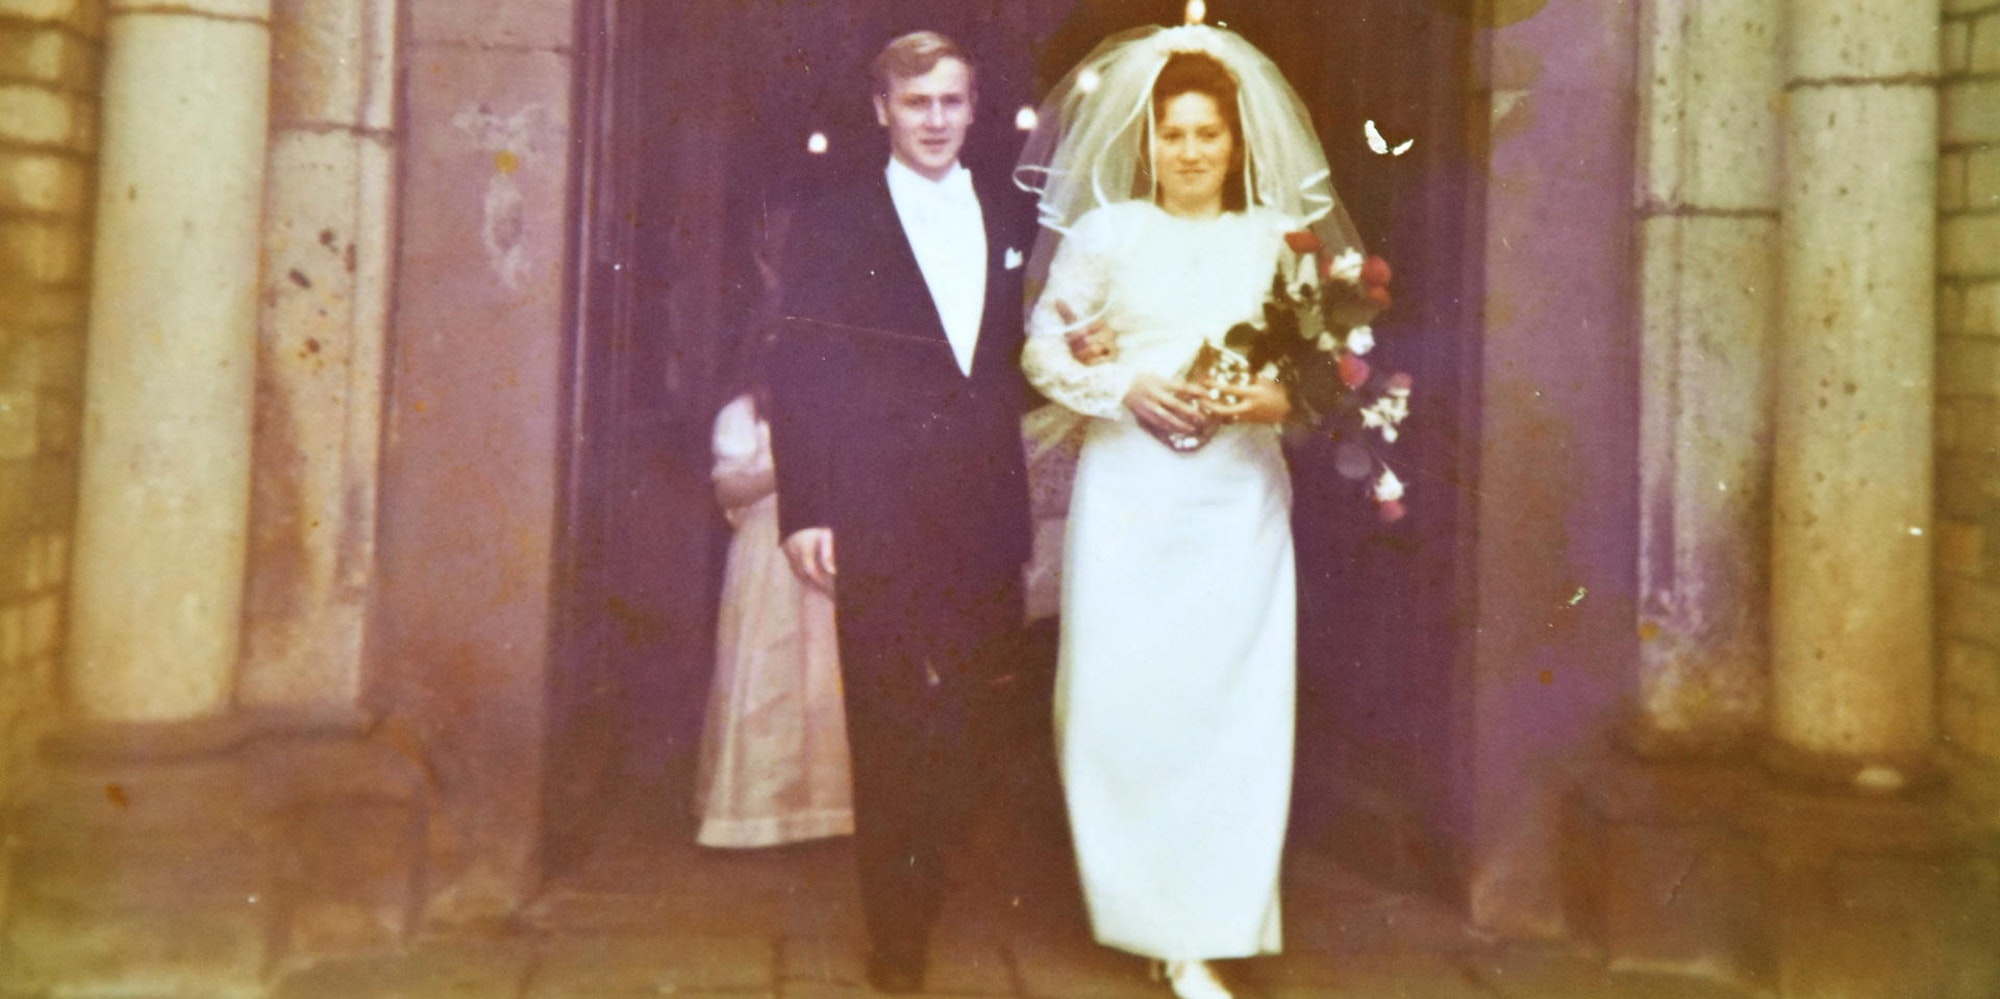 1971 war die Hochzeit in Paffendorf.